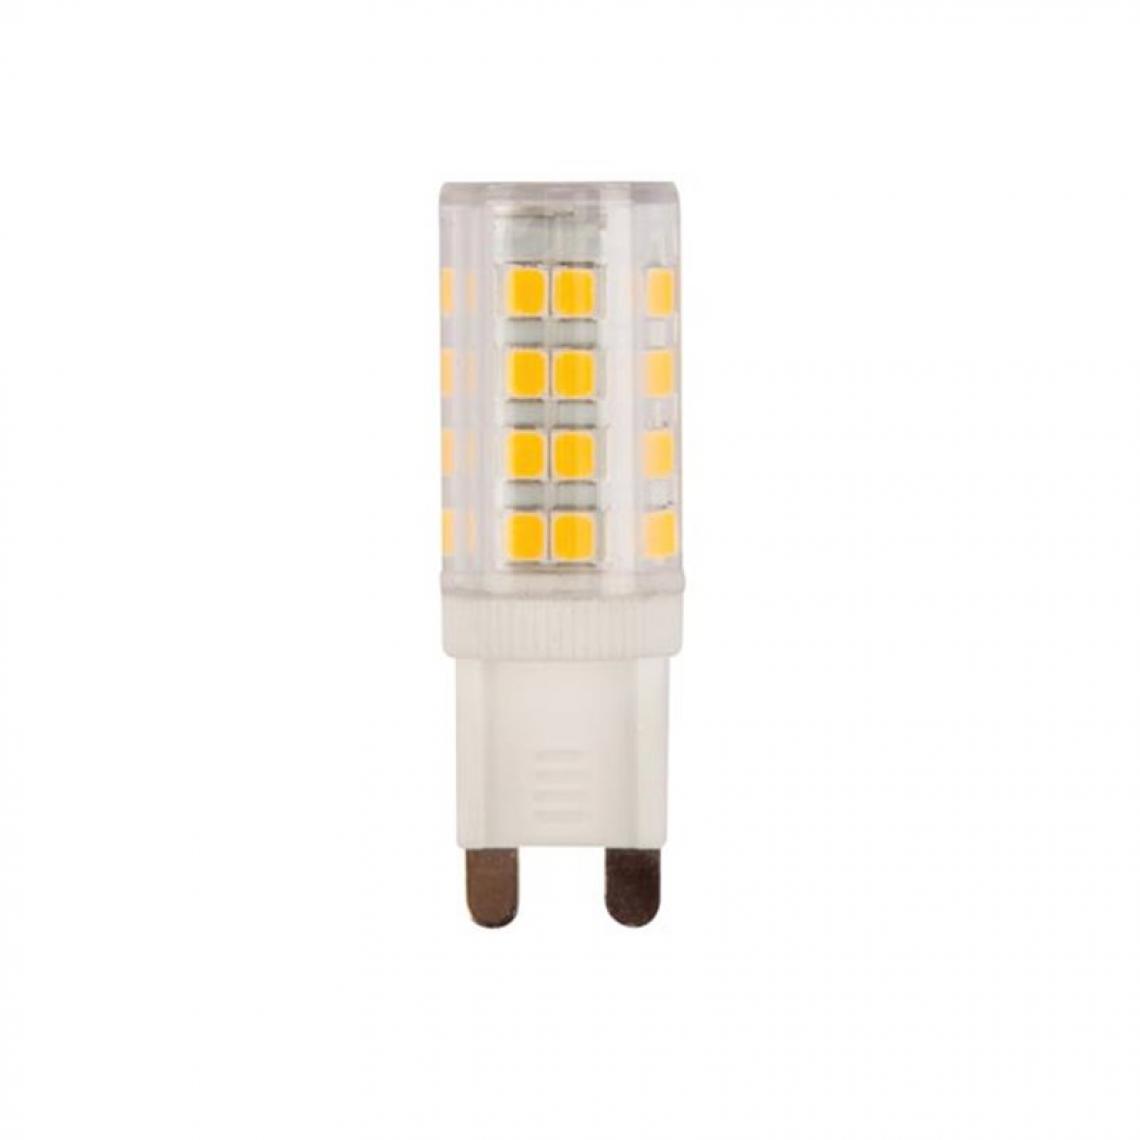 Perel - Ampoule Led - 4 W - G9 - Blanc Chaud - Ampoules LED